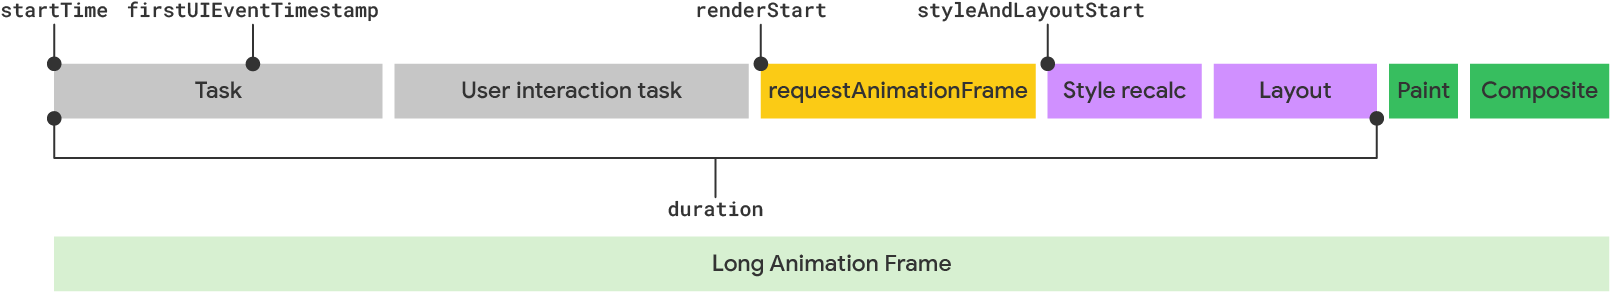 Visualización de un fotograma de animación largo según el modelo de LoAF.